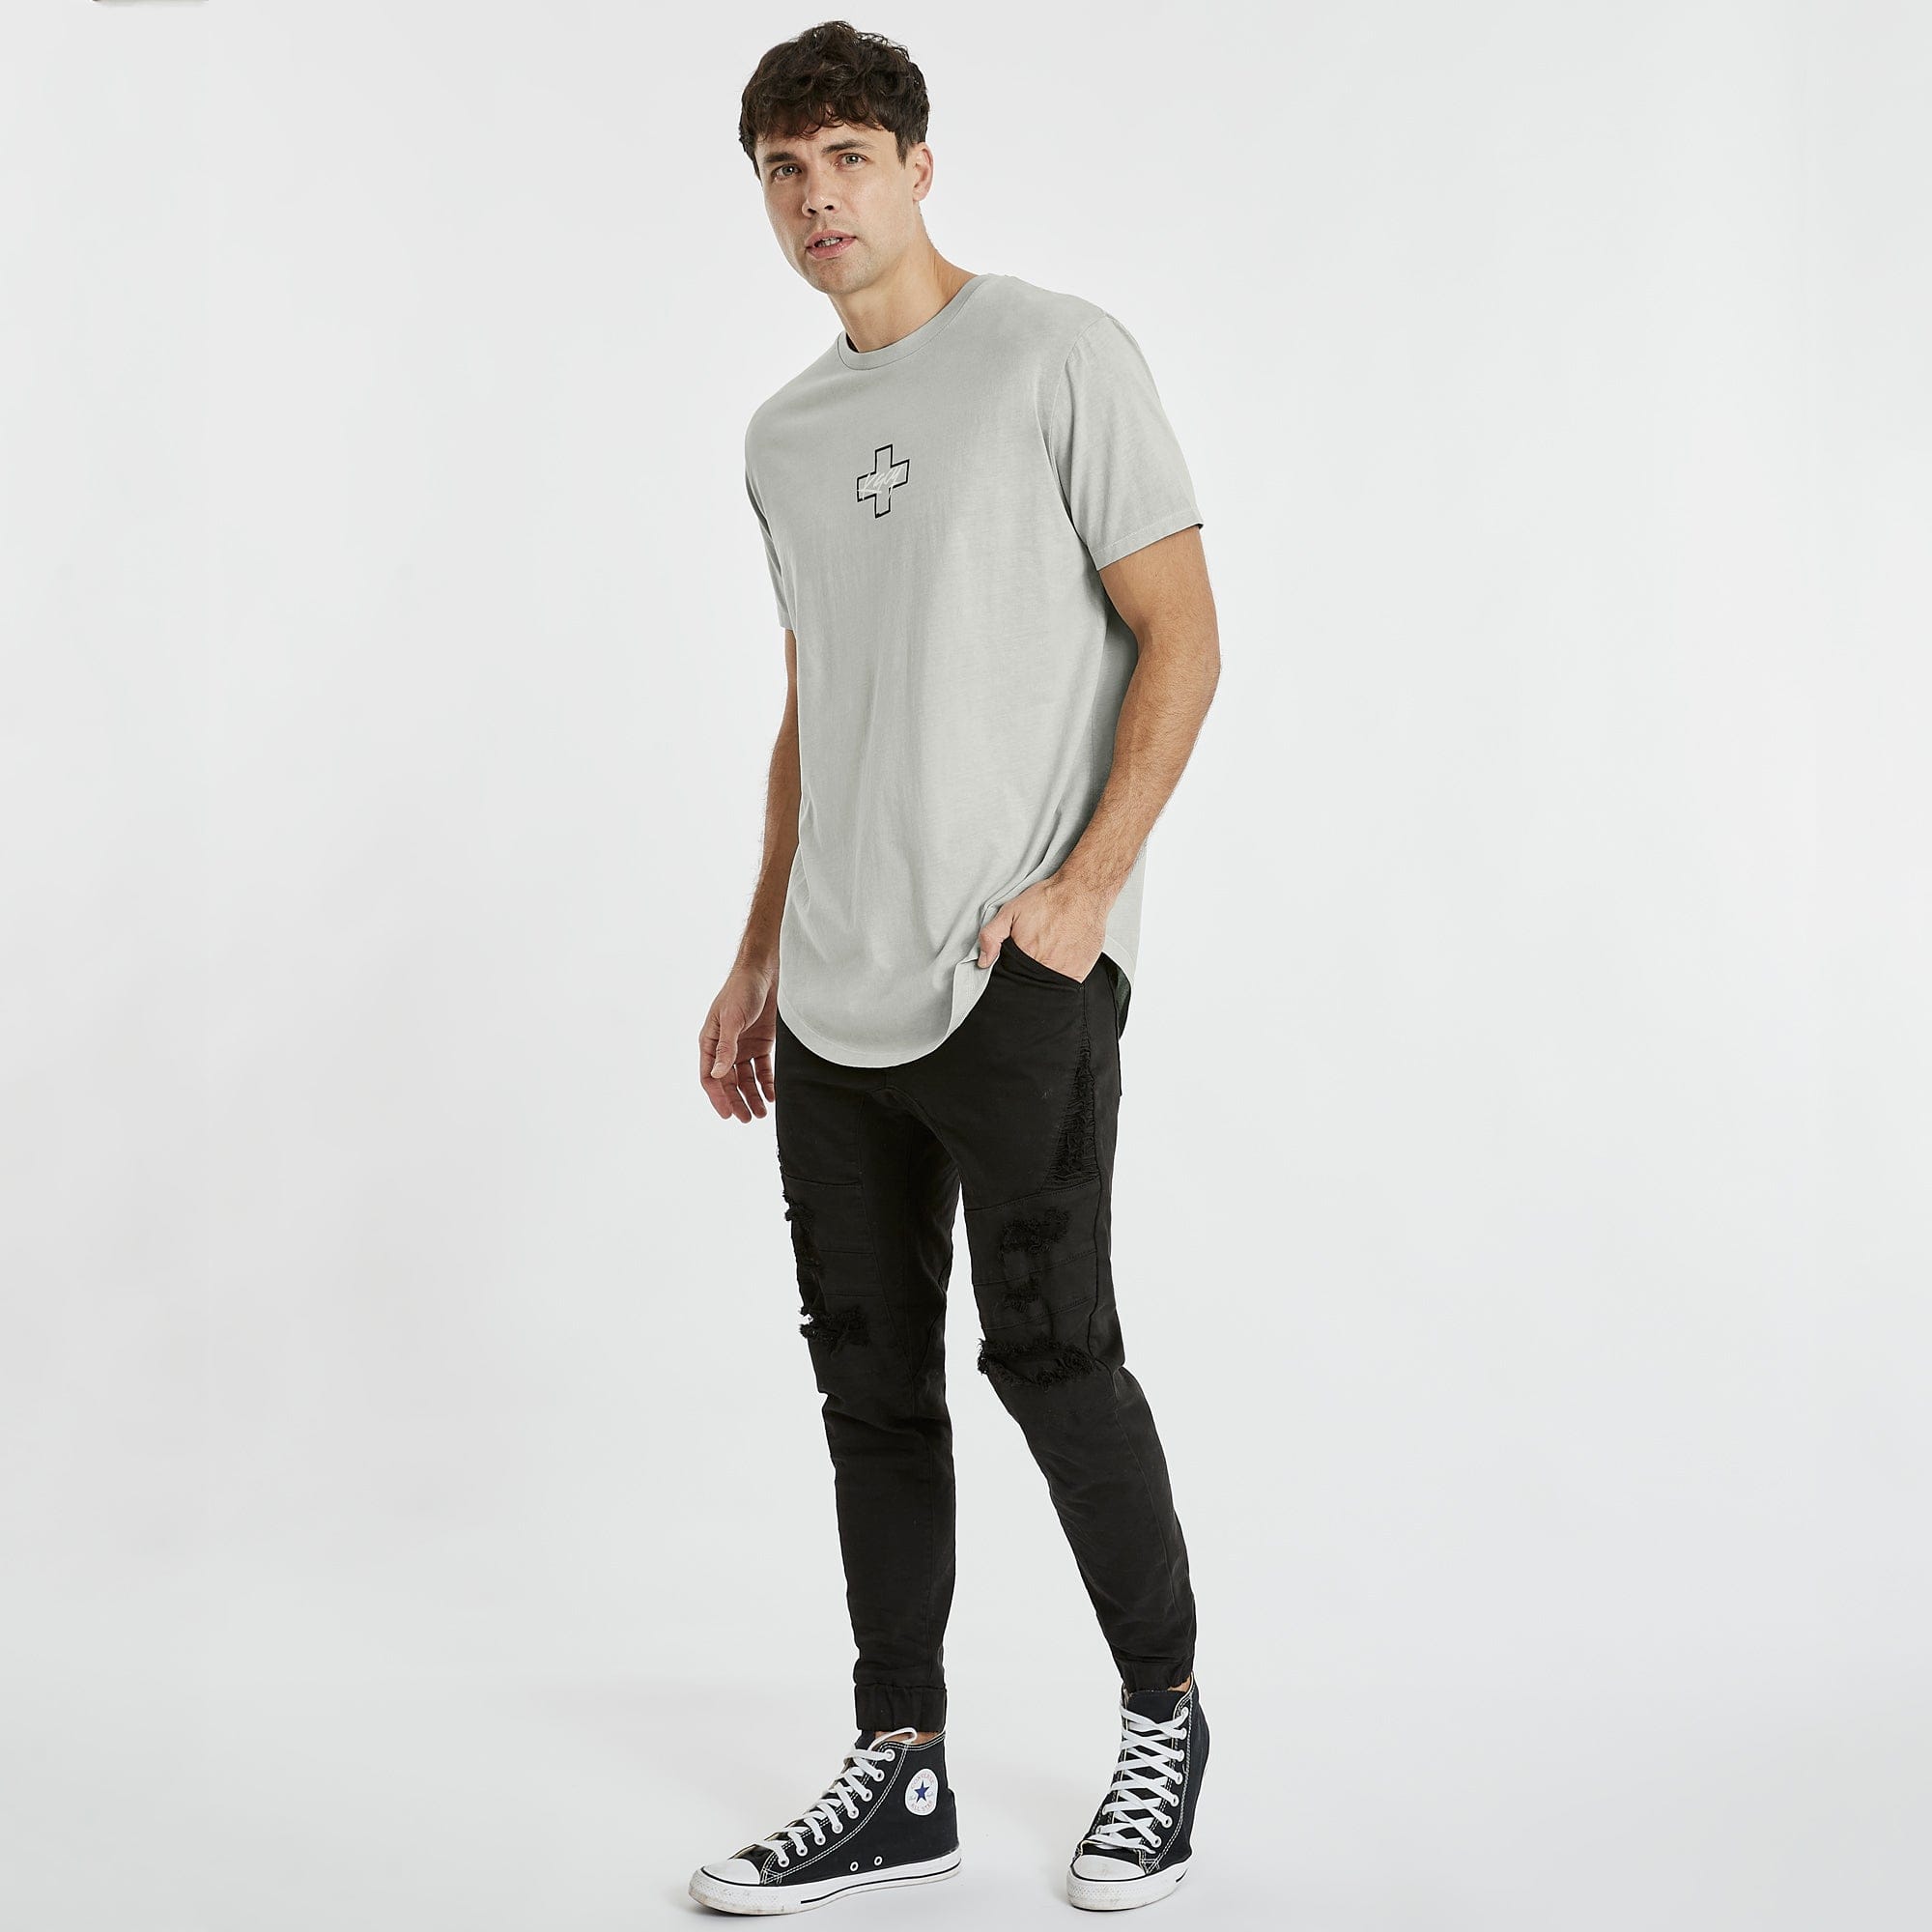 Latigo Dual Curved T-Shirt Pigment Grey